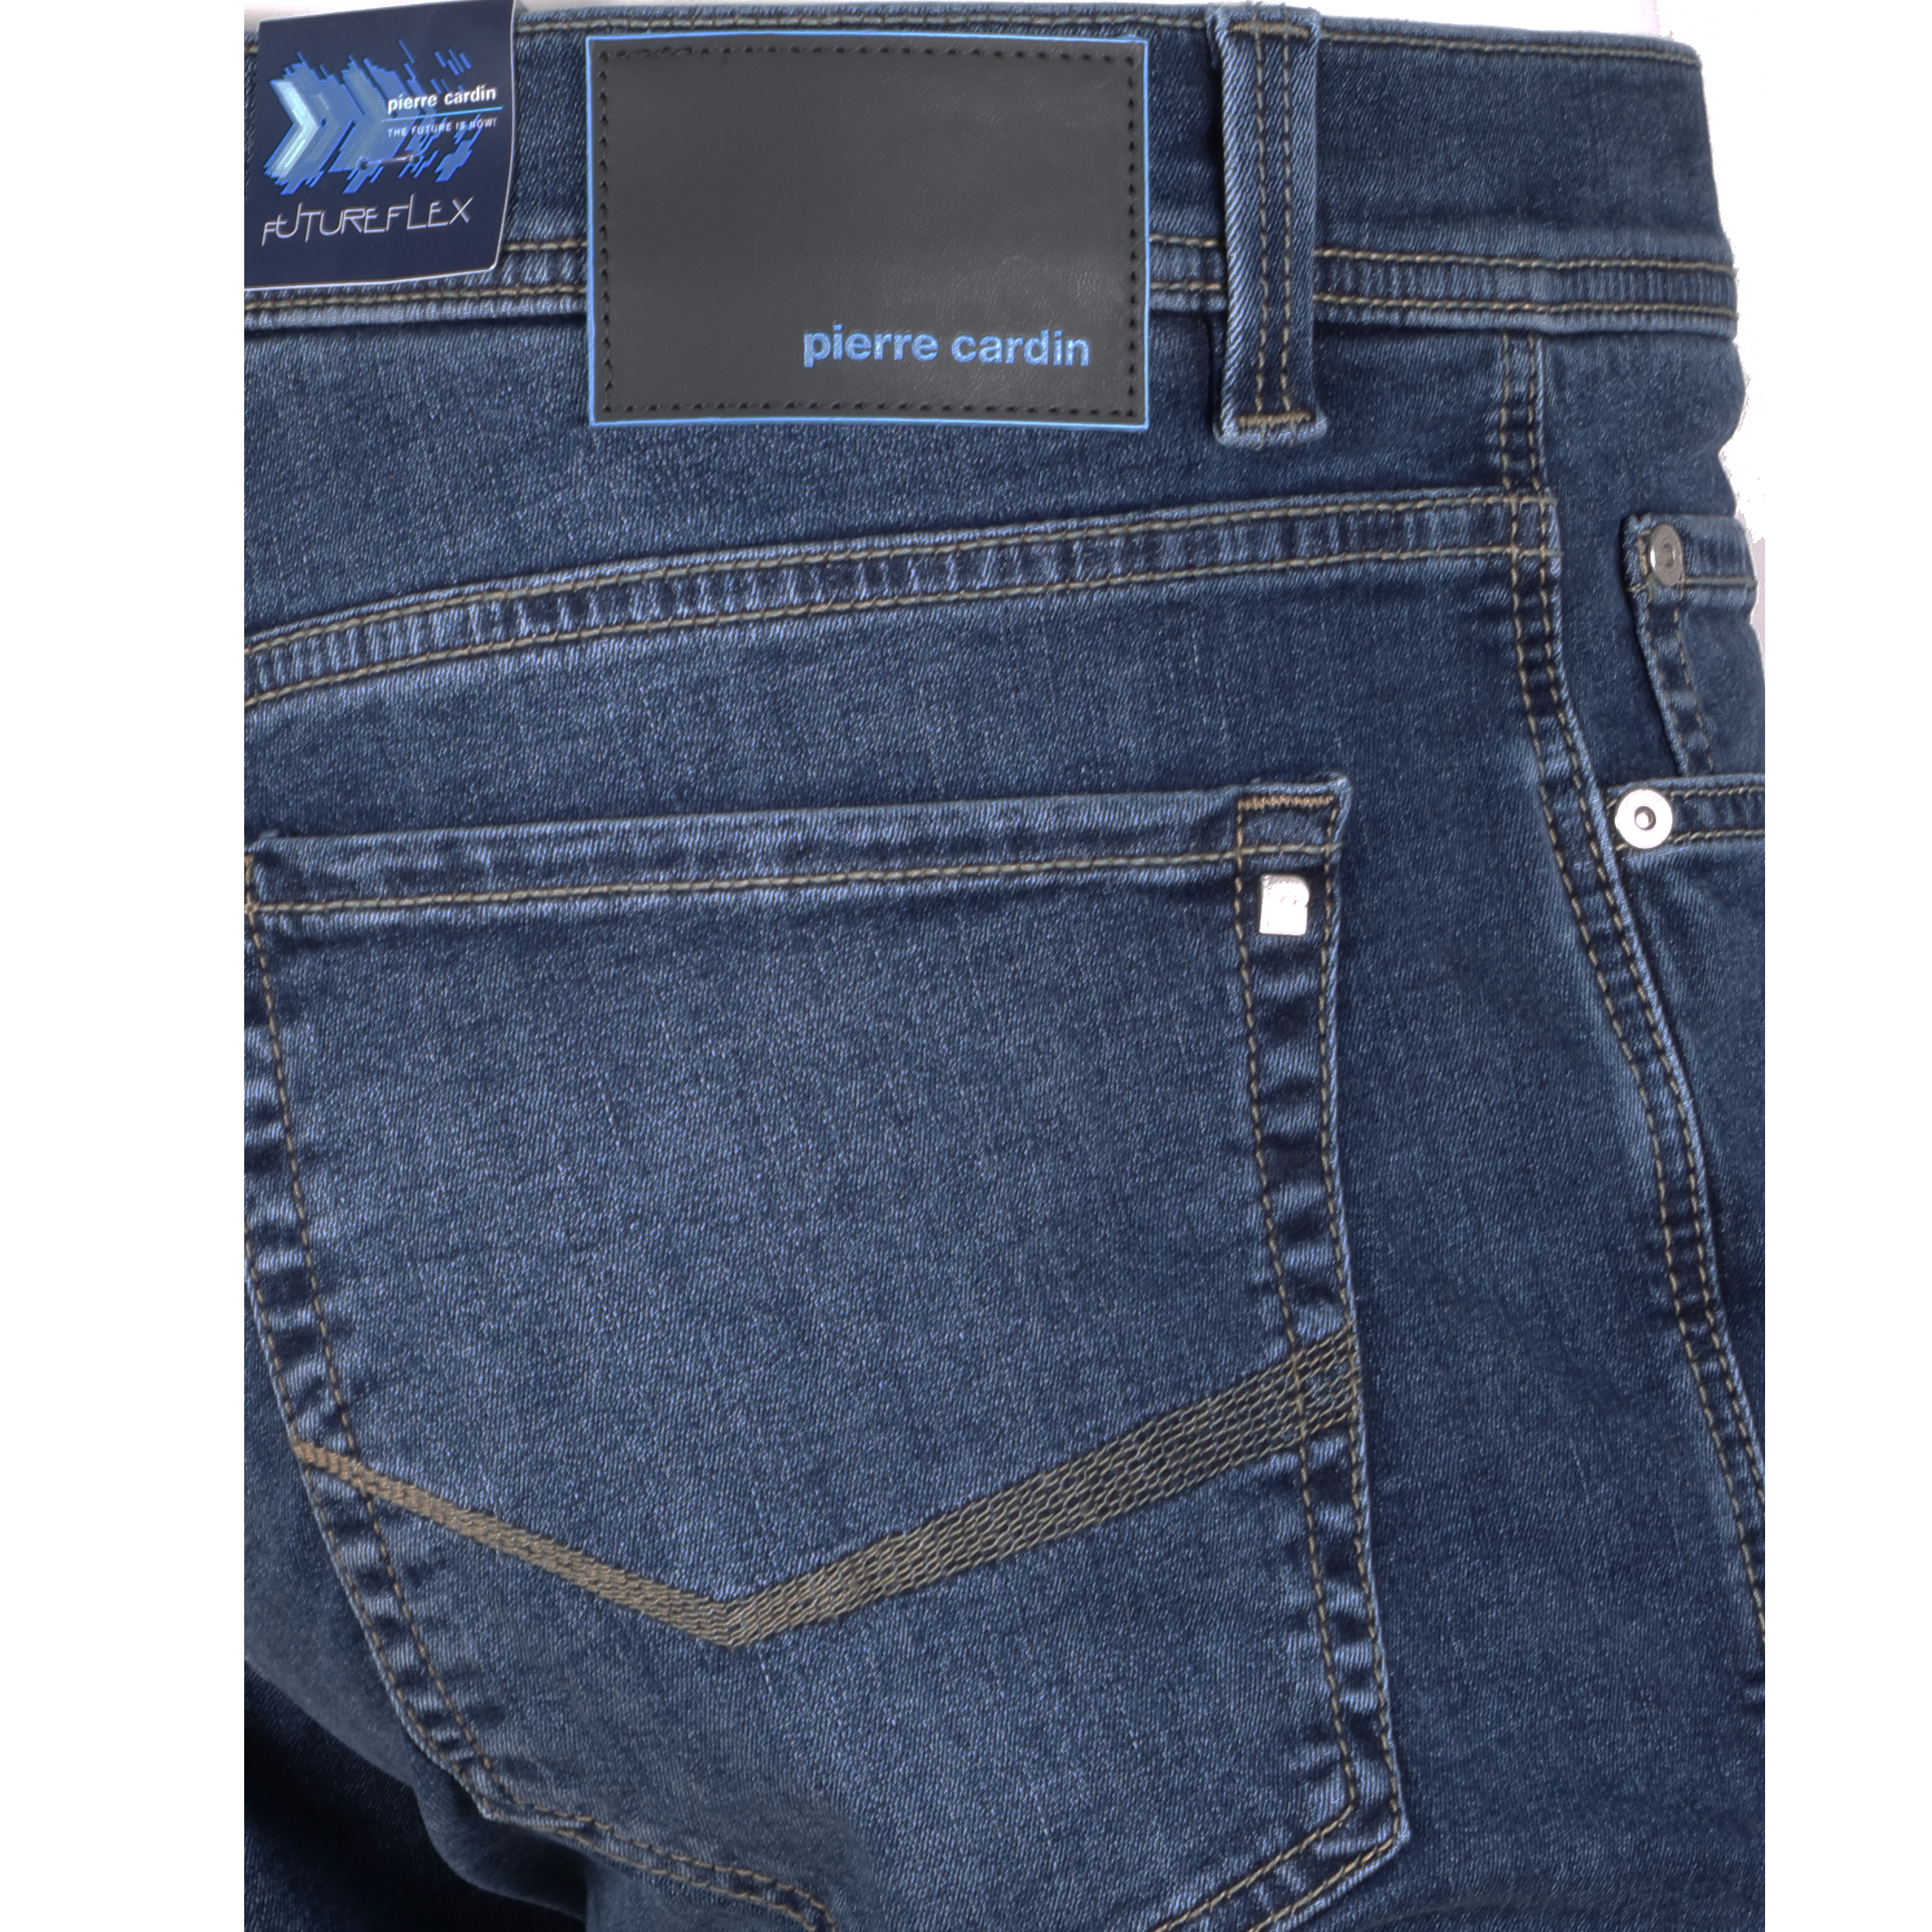 Pierre Cardin Herren Jeans Lyon Futureflex - blau used 32/34